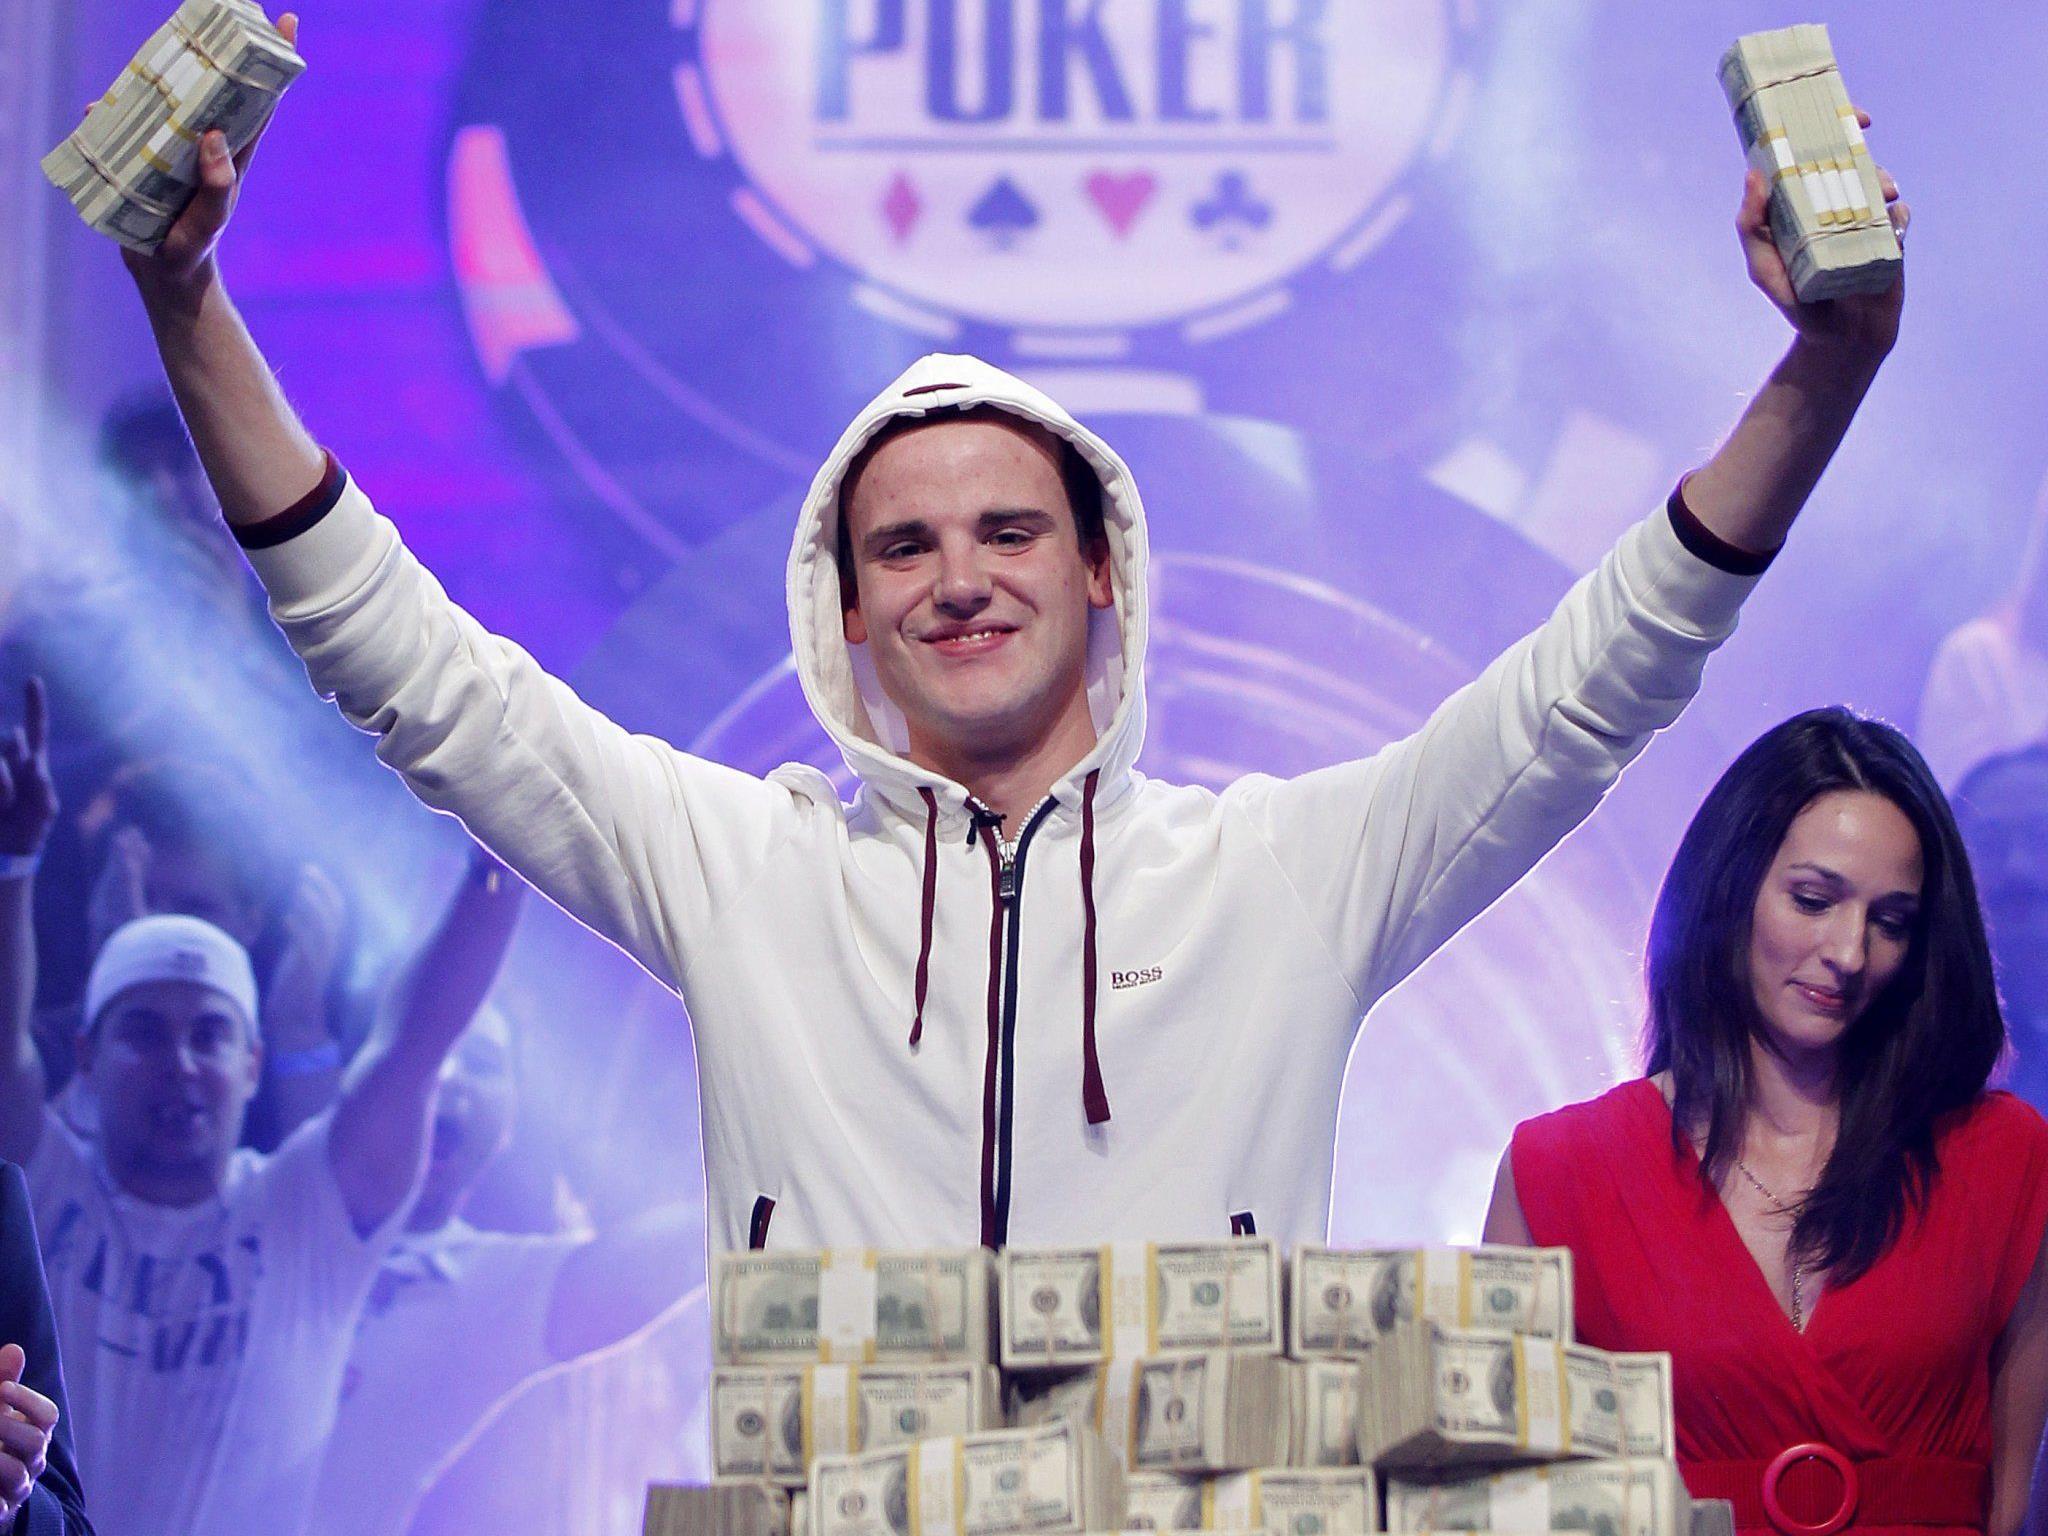 Kölner gewinnt fast neun Millionen Dollar beim Pokern in Las Vegas